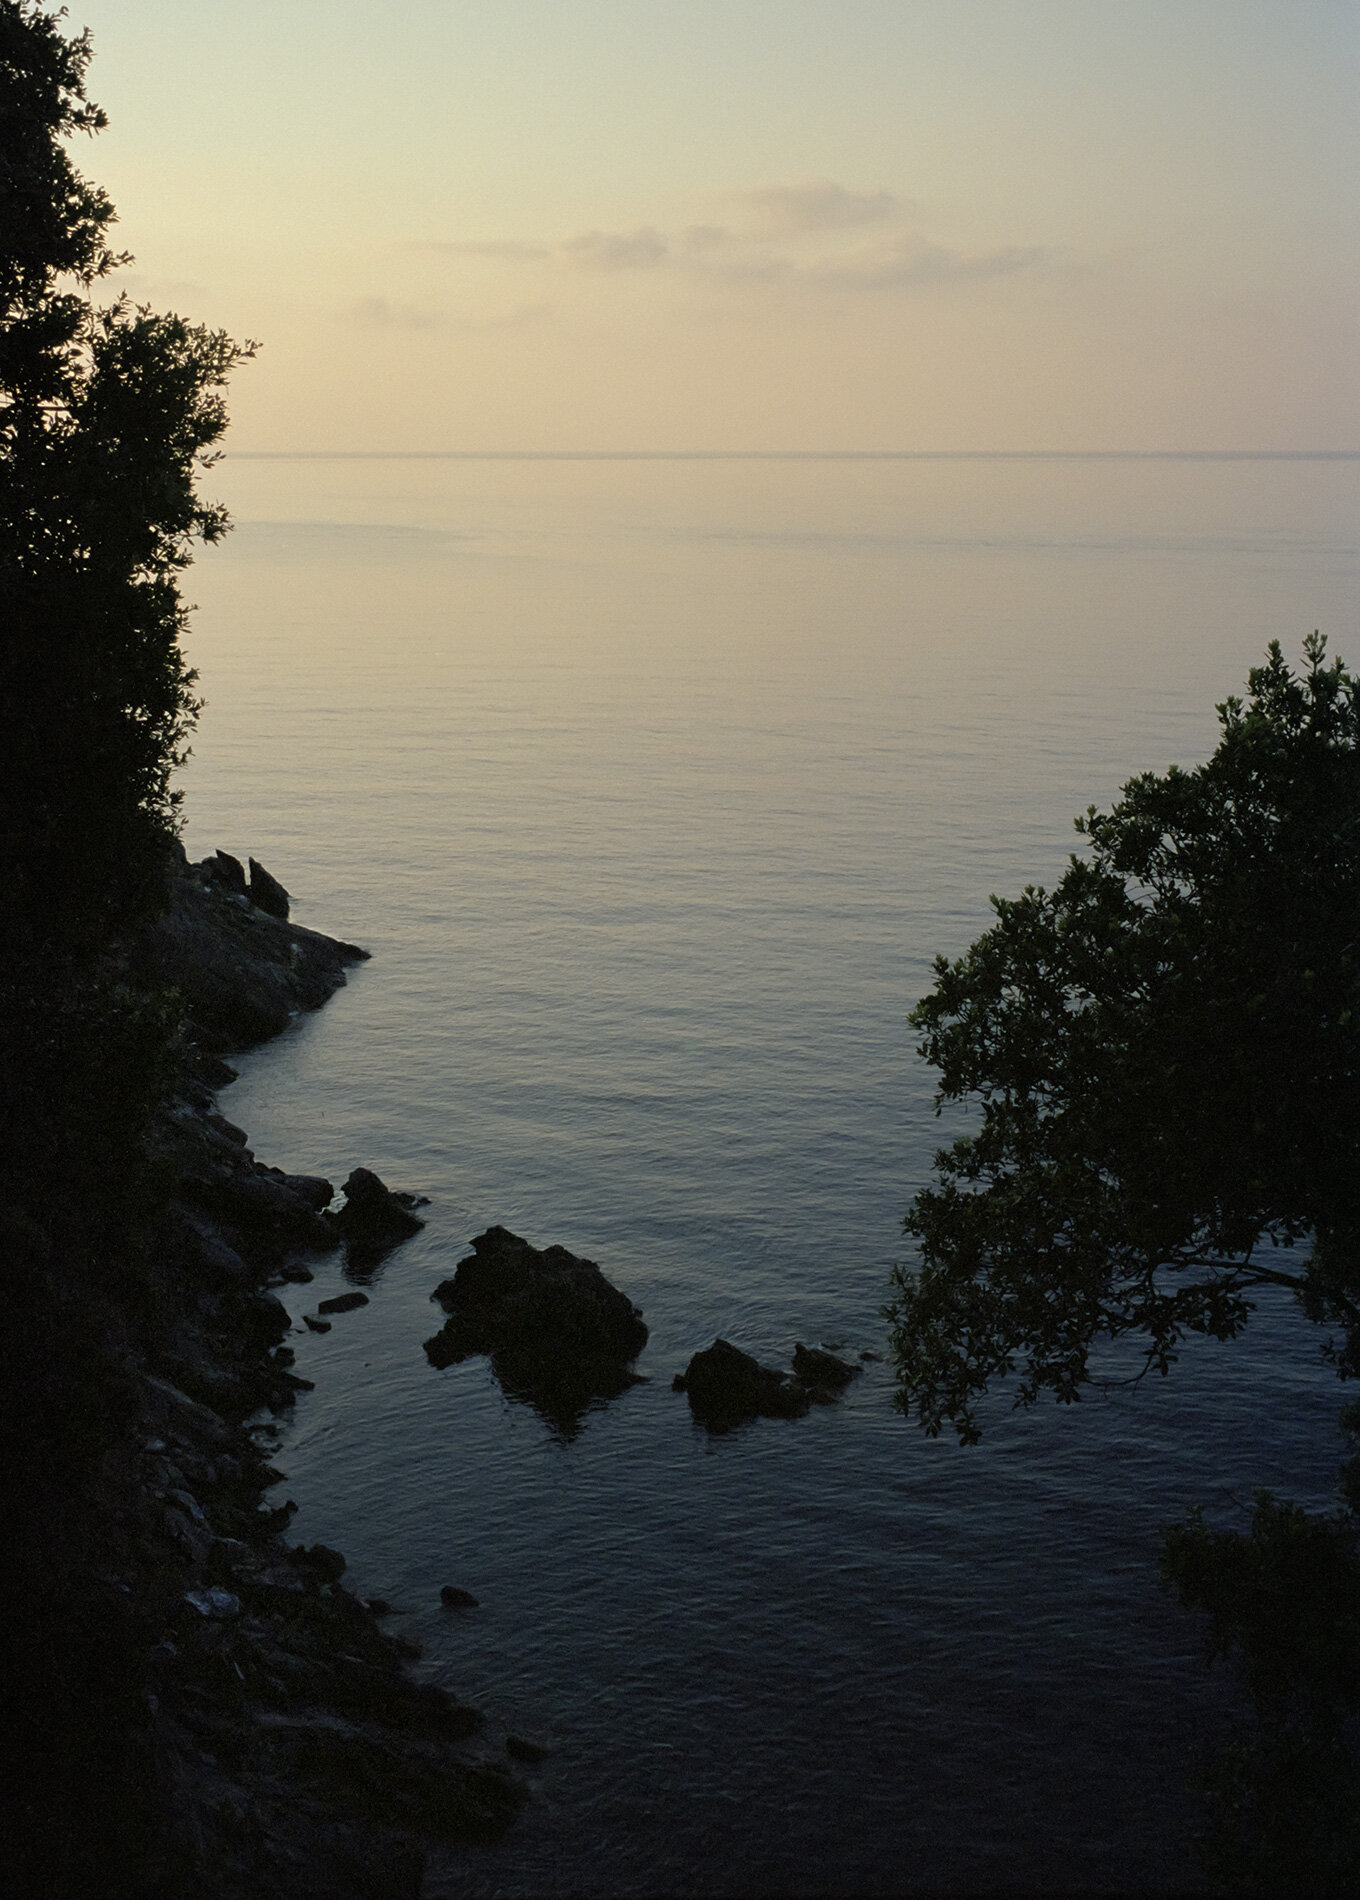   “Come la figlia del mattin, la bella, dalle dita di rose Aurora surse”. Elba Island, Italy, 2011  